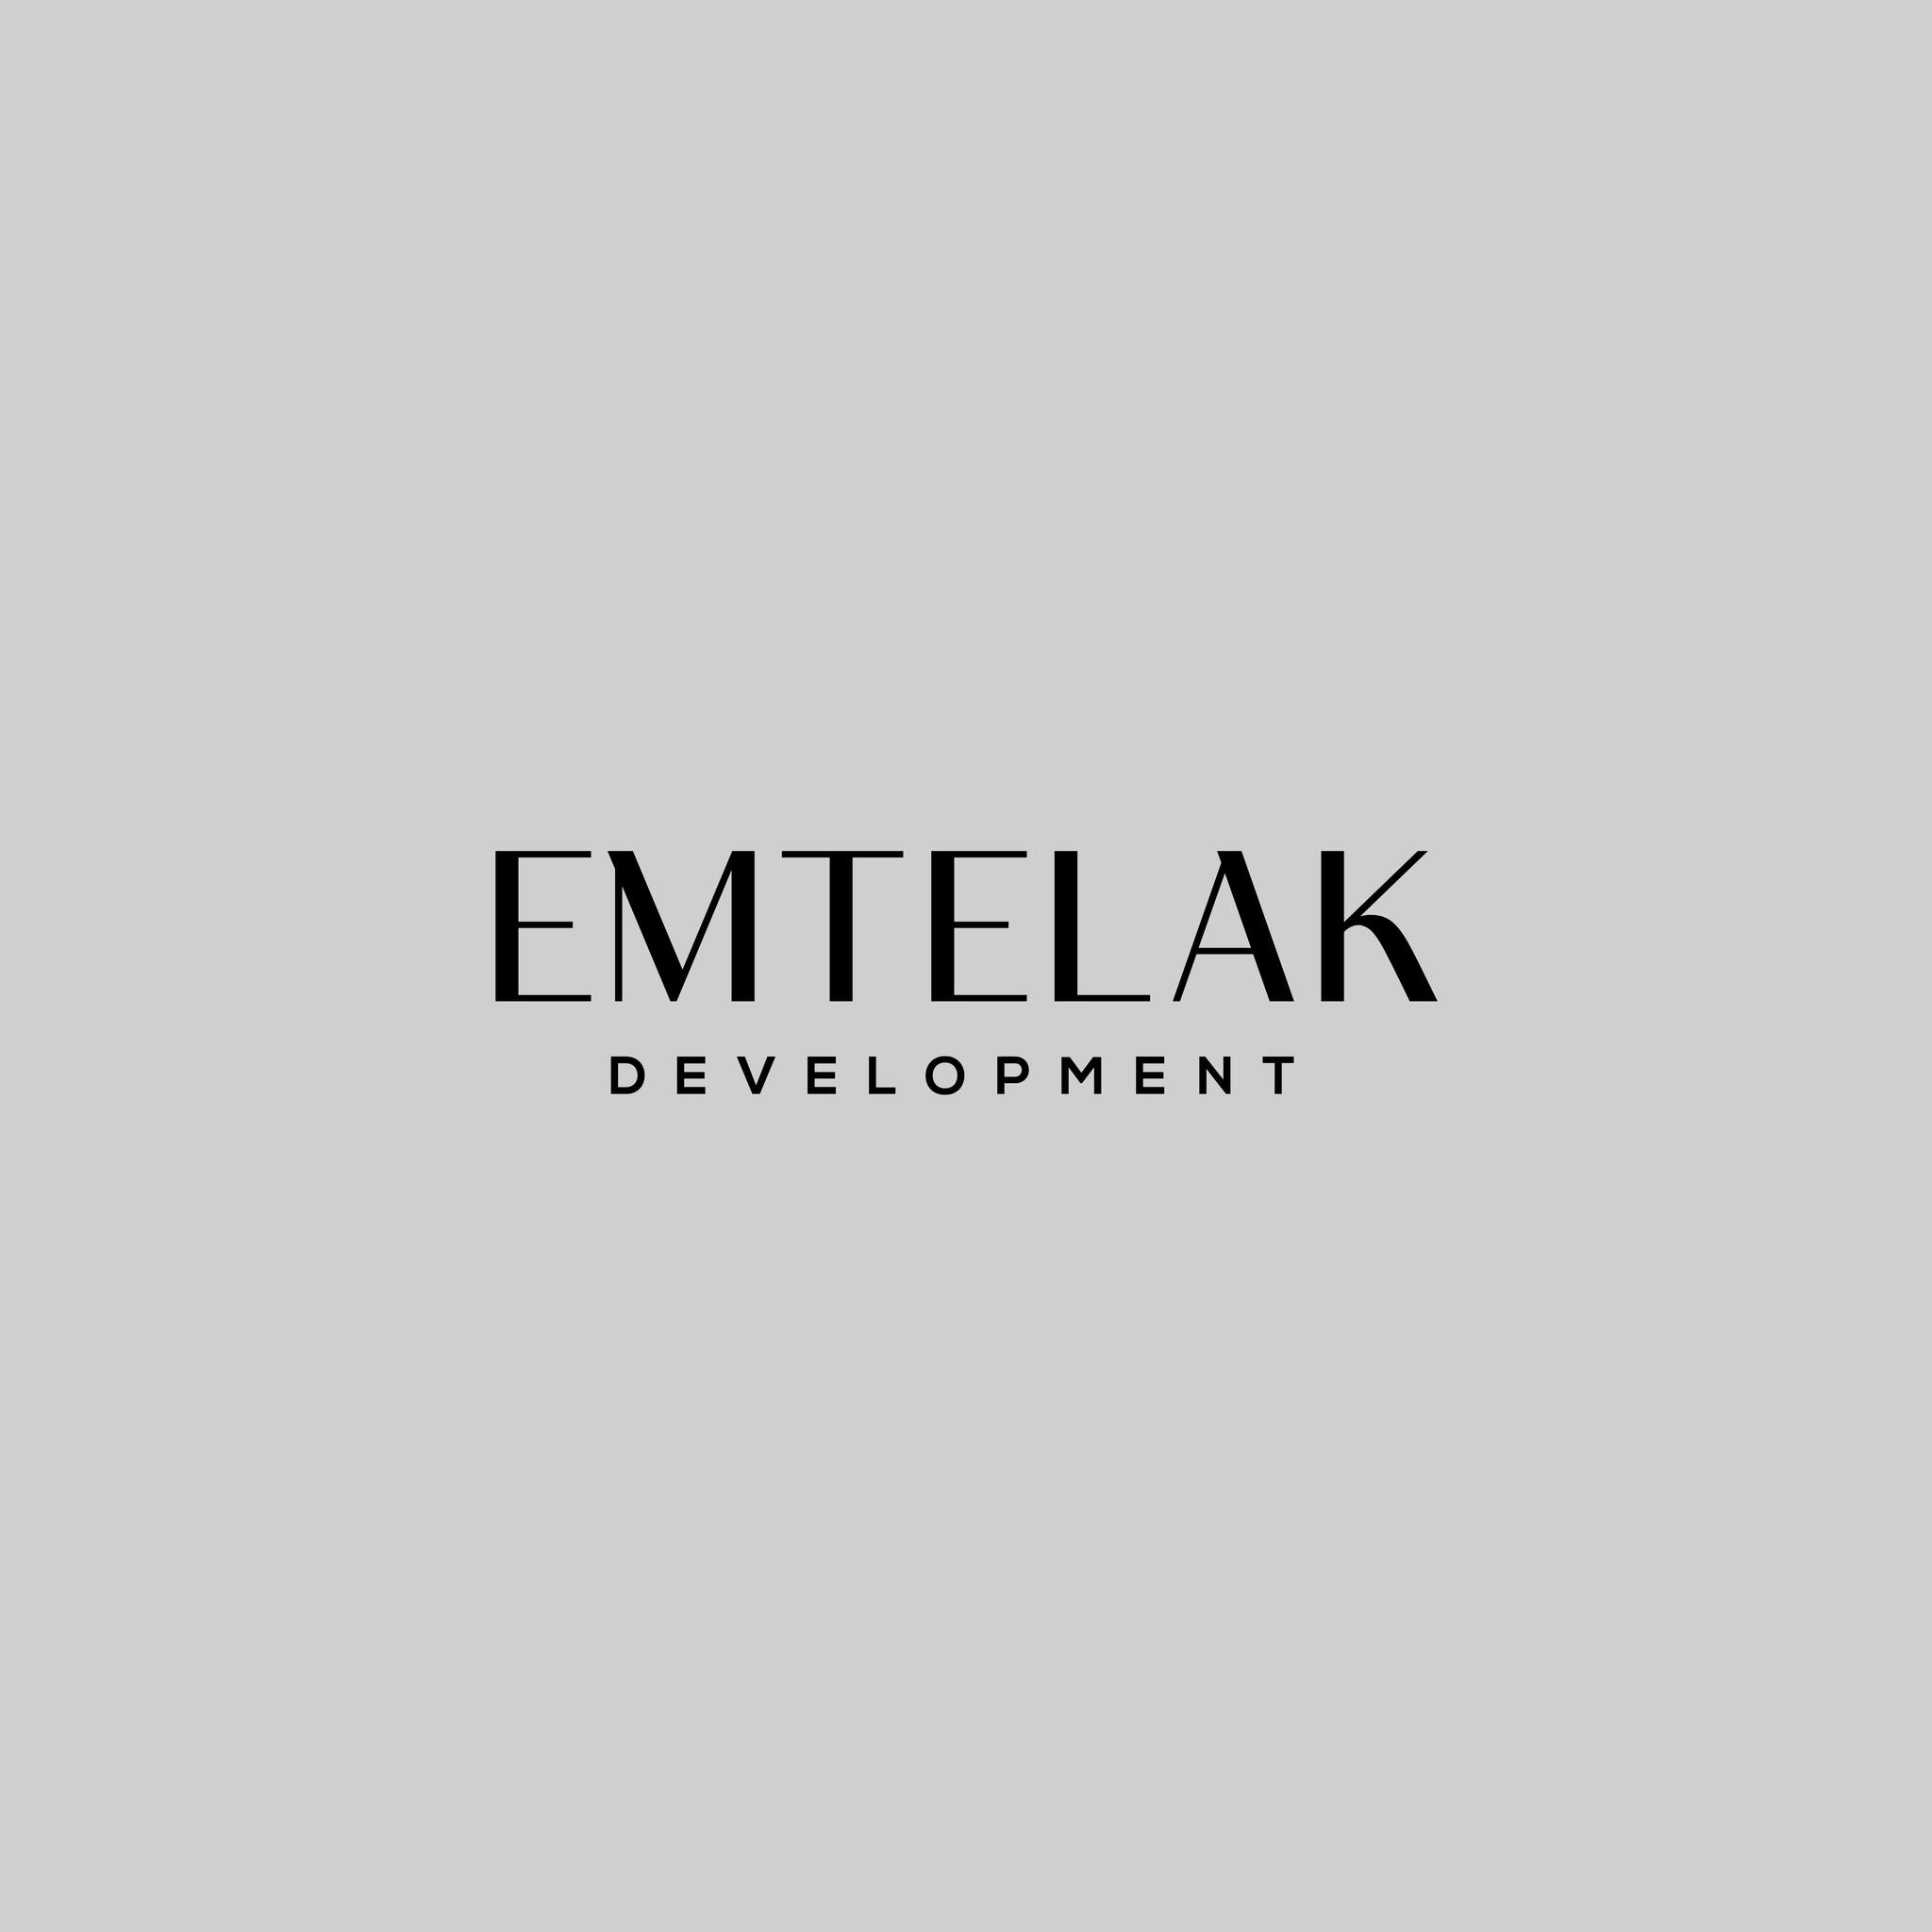 شركة امتلاك للتطوير العقاري Emtelak Development